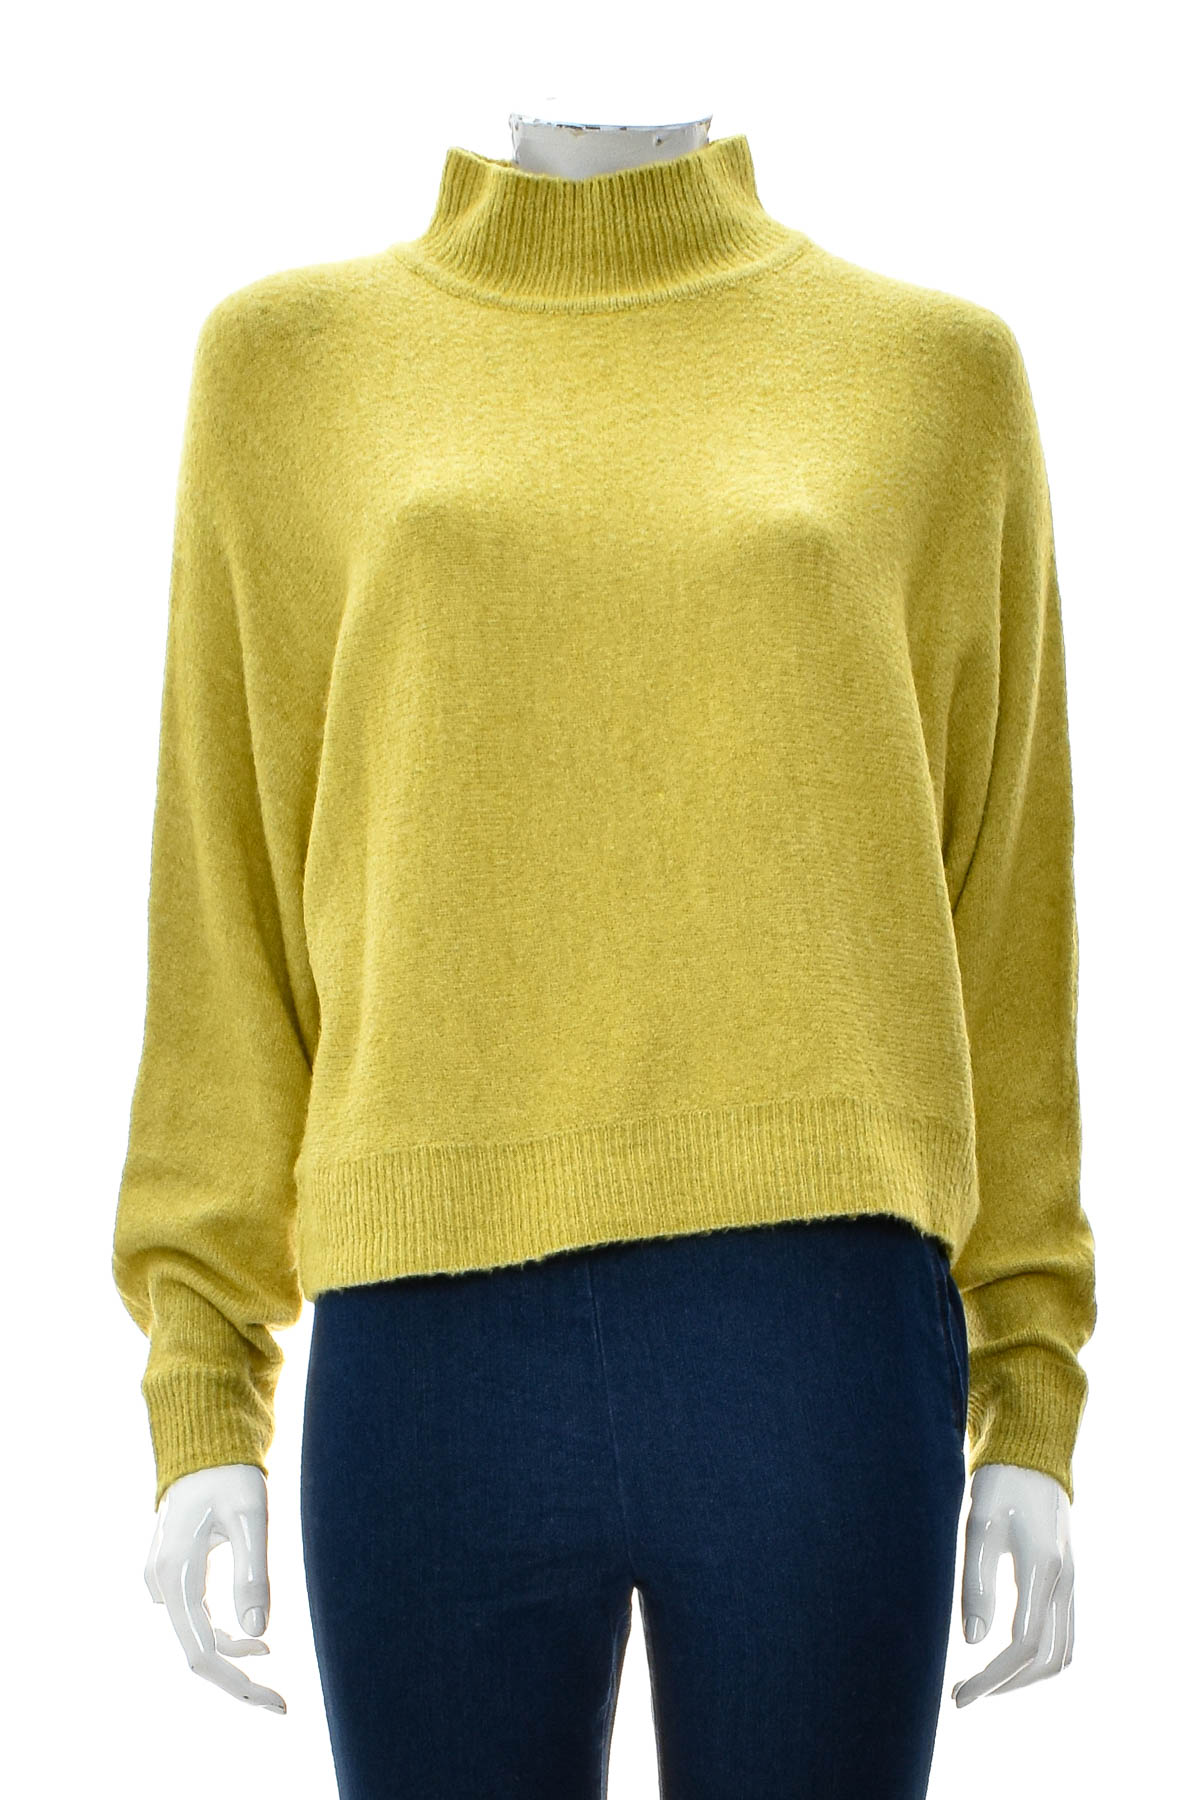 Women's sweater - Jean Pascale - 0